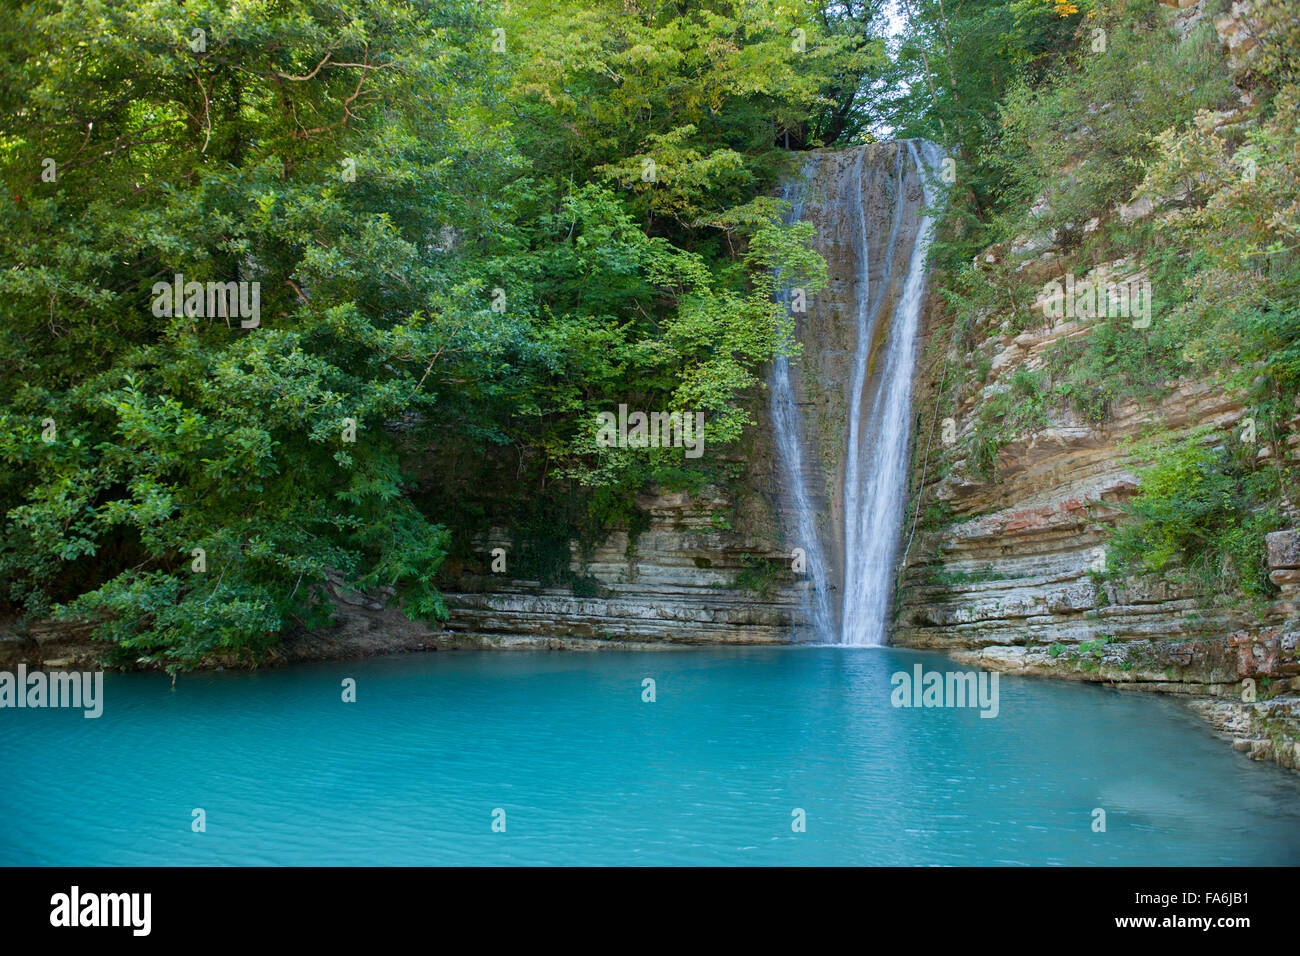 Türkei, westliche Schwarzmeerküste, Provinz Sinop, Erfelek, Erfelek-Wasserfälle Stock Photo